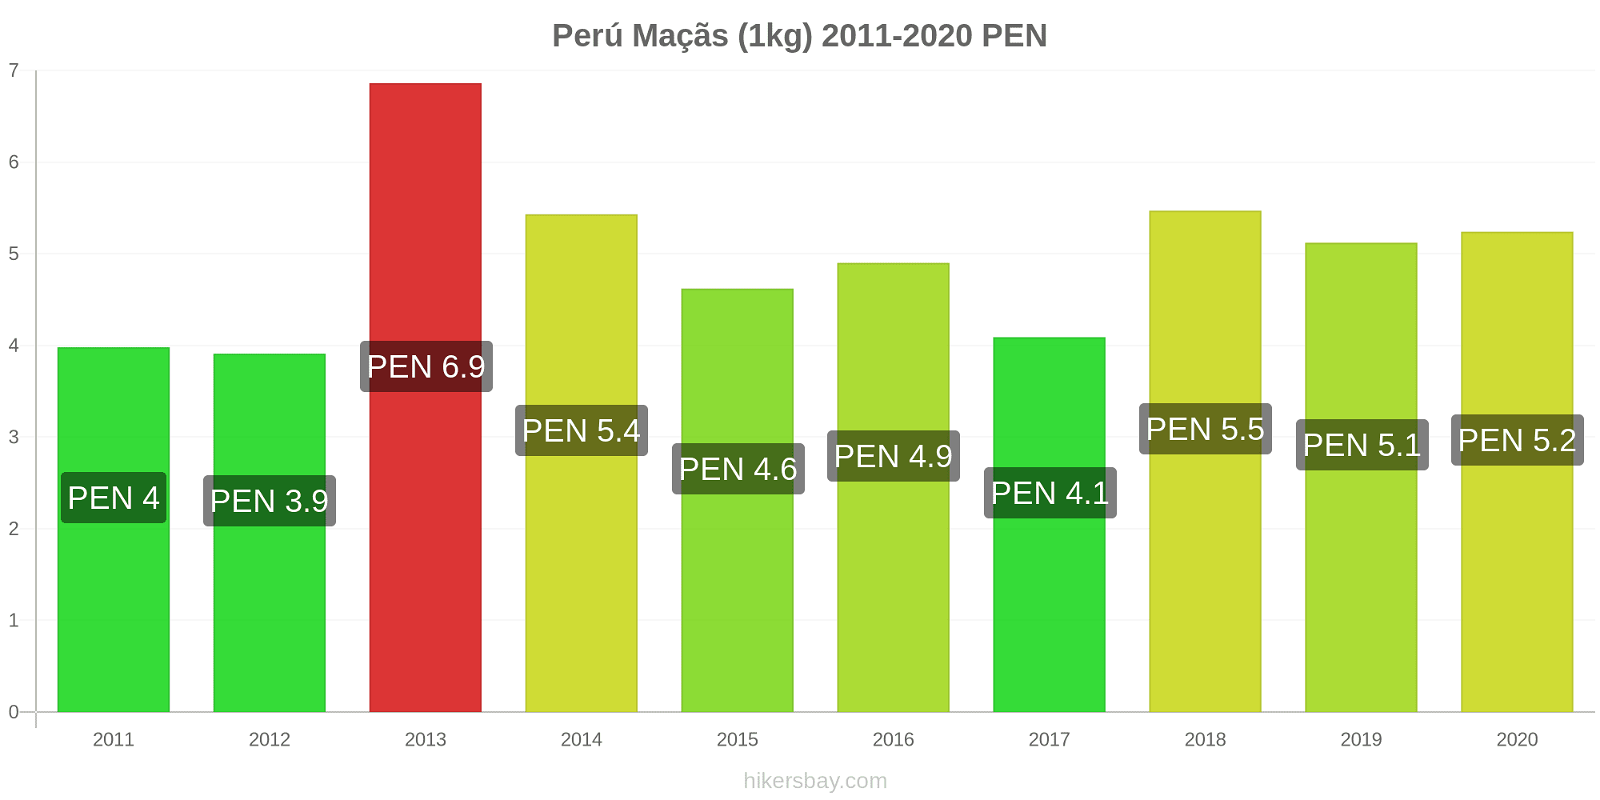 Perú variação de preço Maçãs (1kg) hikersbay.com